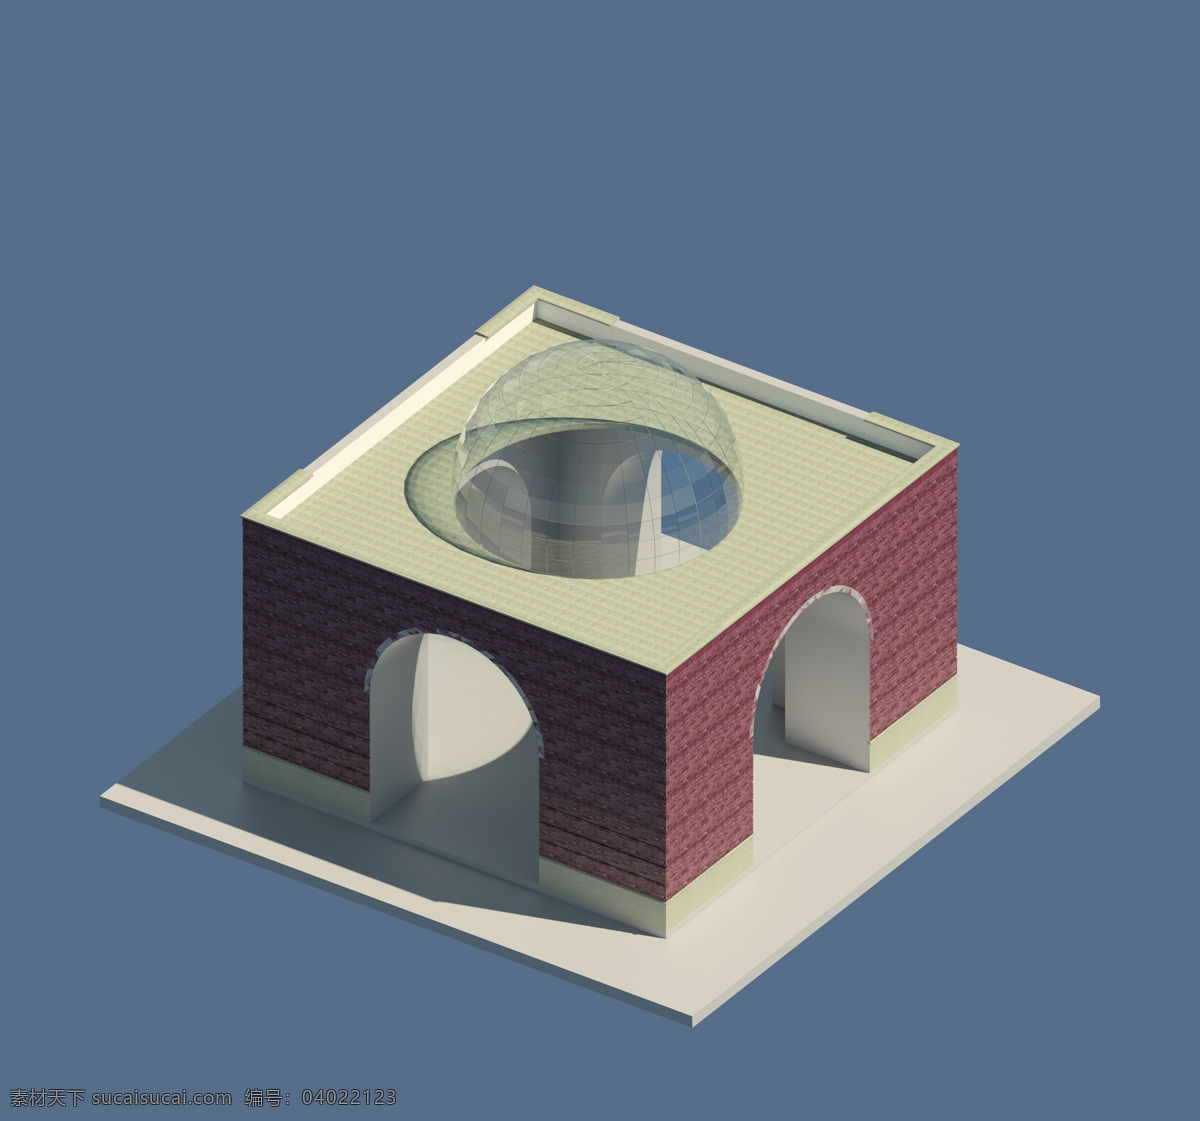 样品 室 埃及 灵感 建设 3d模型素材 建筑模型